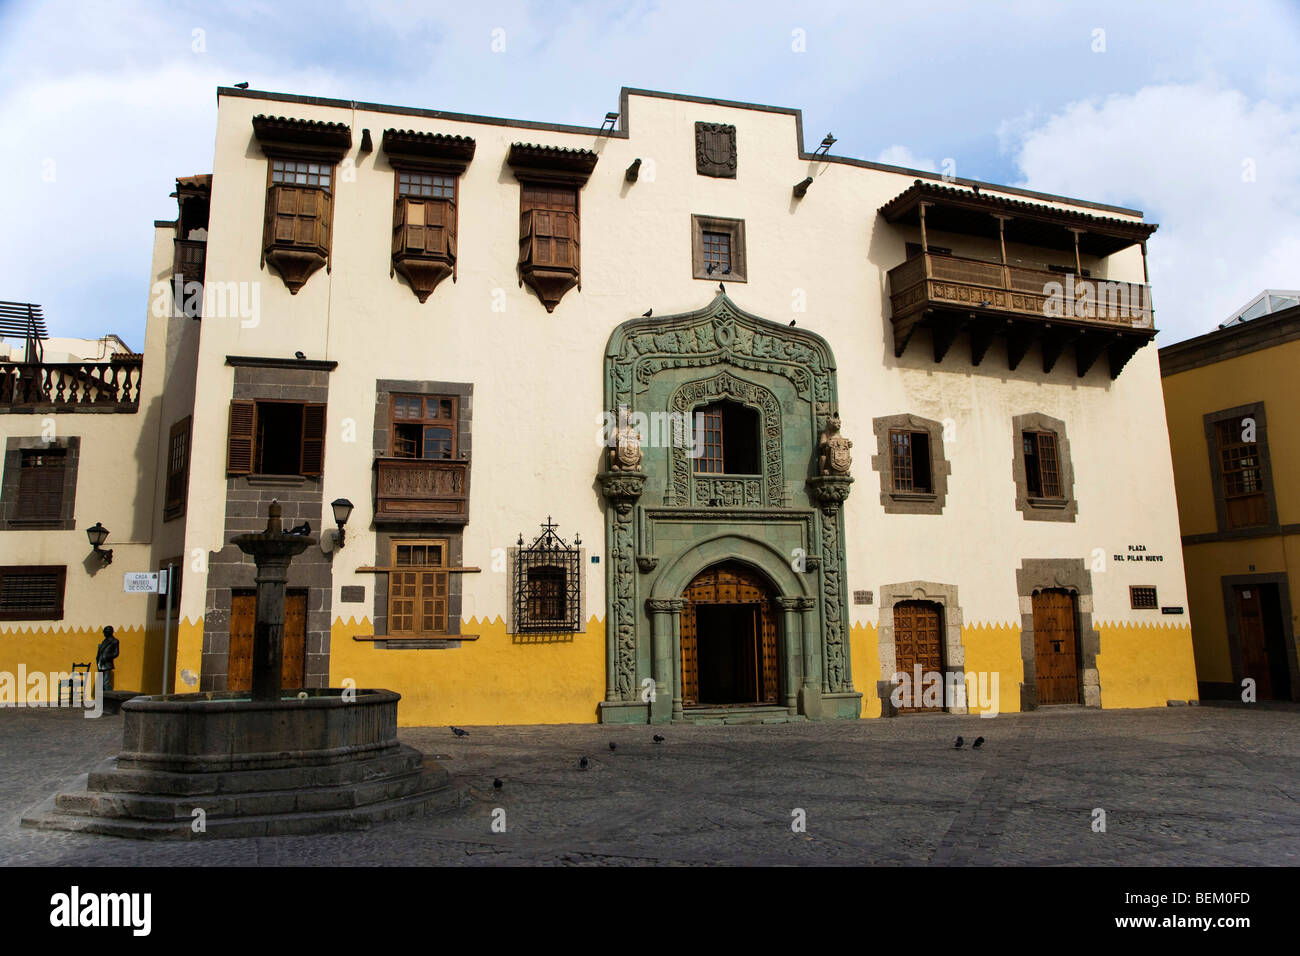 La casa di Cristoforo Colombo in Plaza del Pilar Nuevo, città vecchia, Las Palmas, Gran Canaria Canary Isalnds, Spagna, Europa Foto Stock